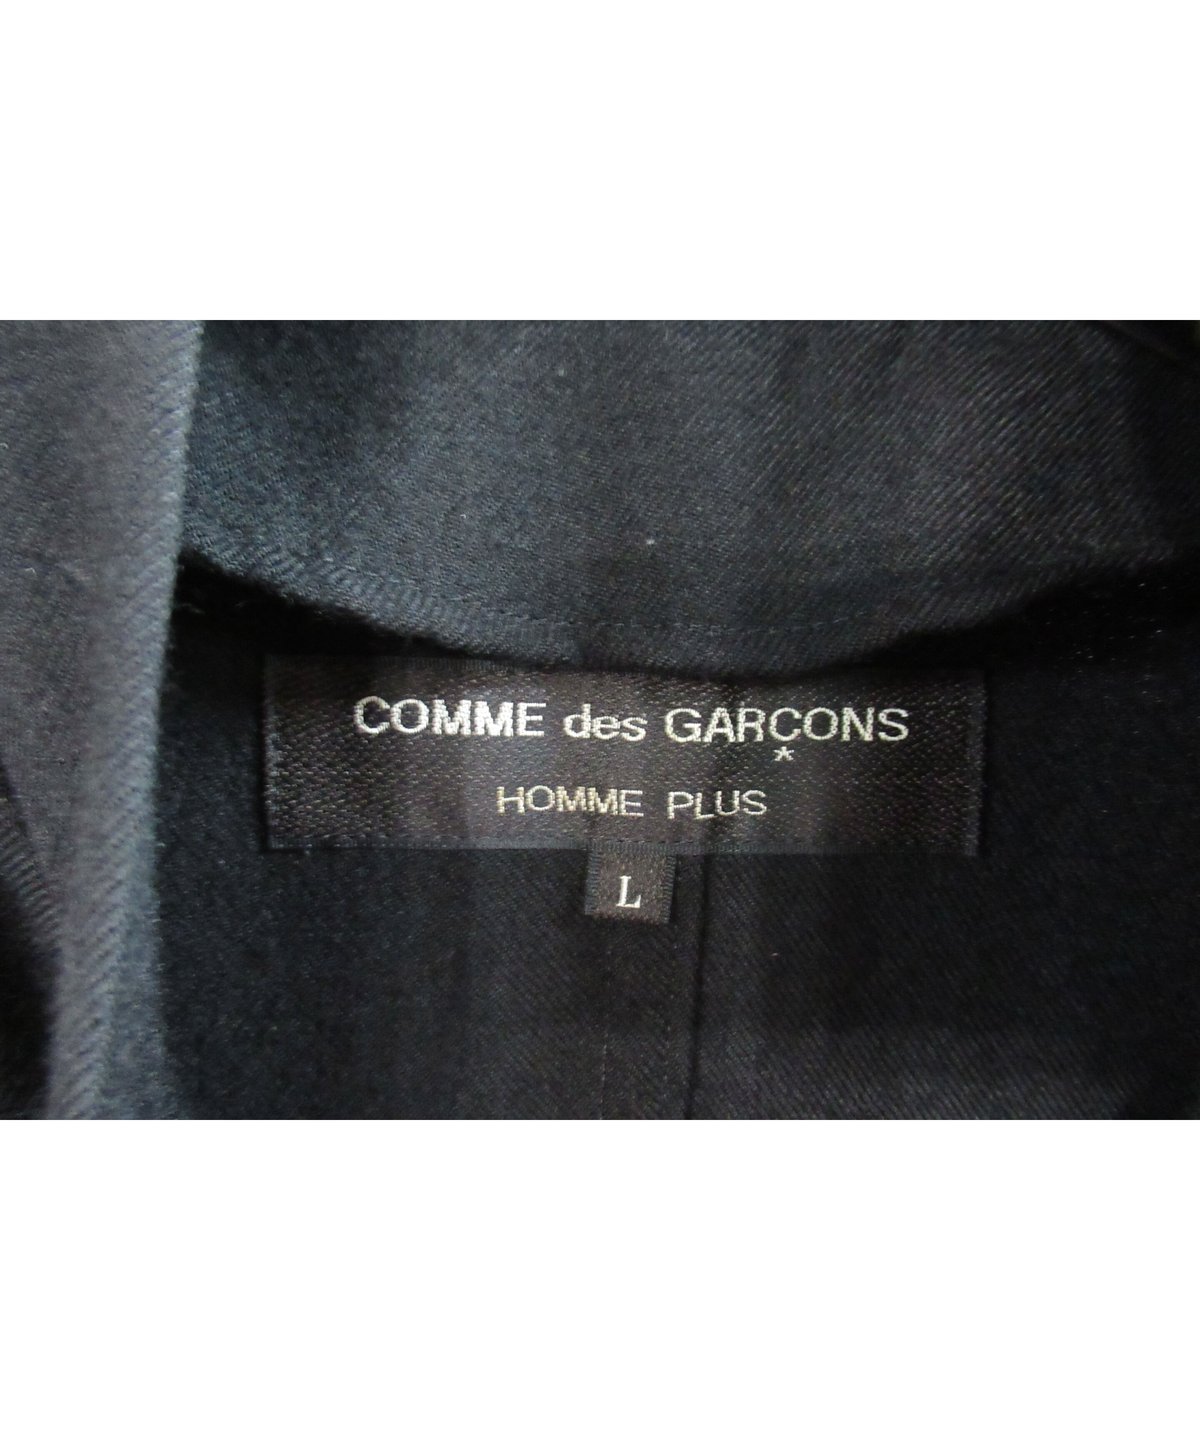 AD1996 COMME des GARCONS HOMME PLUS 袖ニット切替えブルゾン...